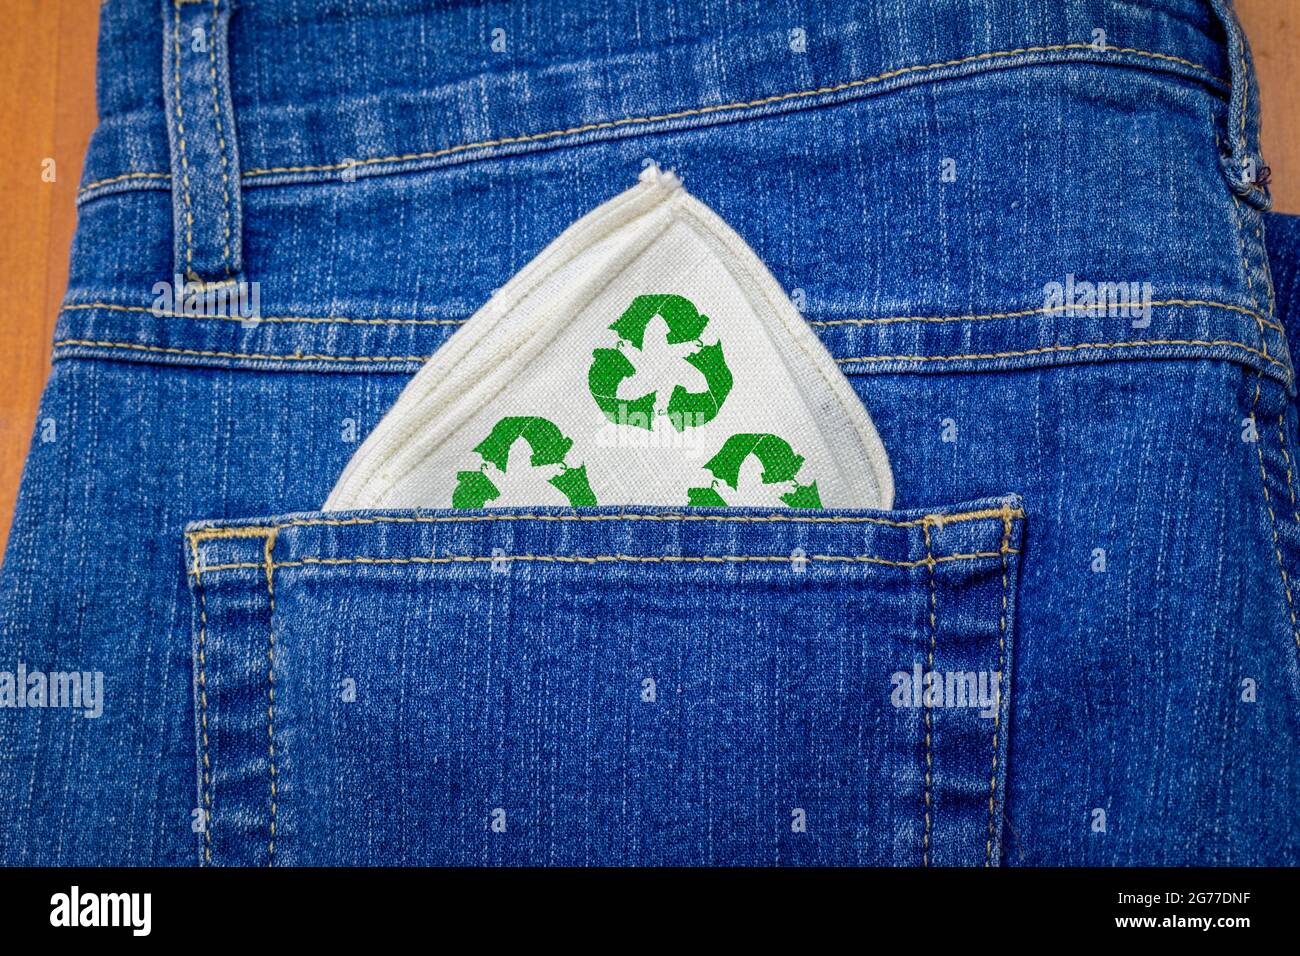 Pañuelo de tela reutilizable con icono de tela reciclada en el bolsillo trasero de los jeans, pañuelo reutilizable lavable que reduce el consumo y los residuos Foto de stock